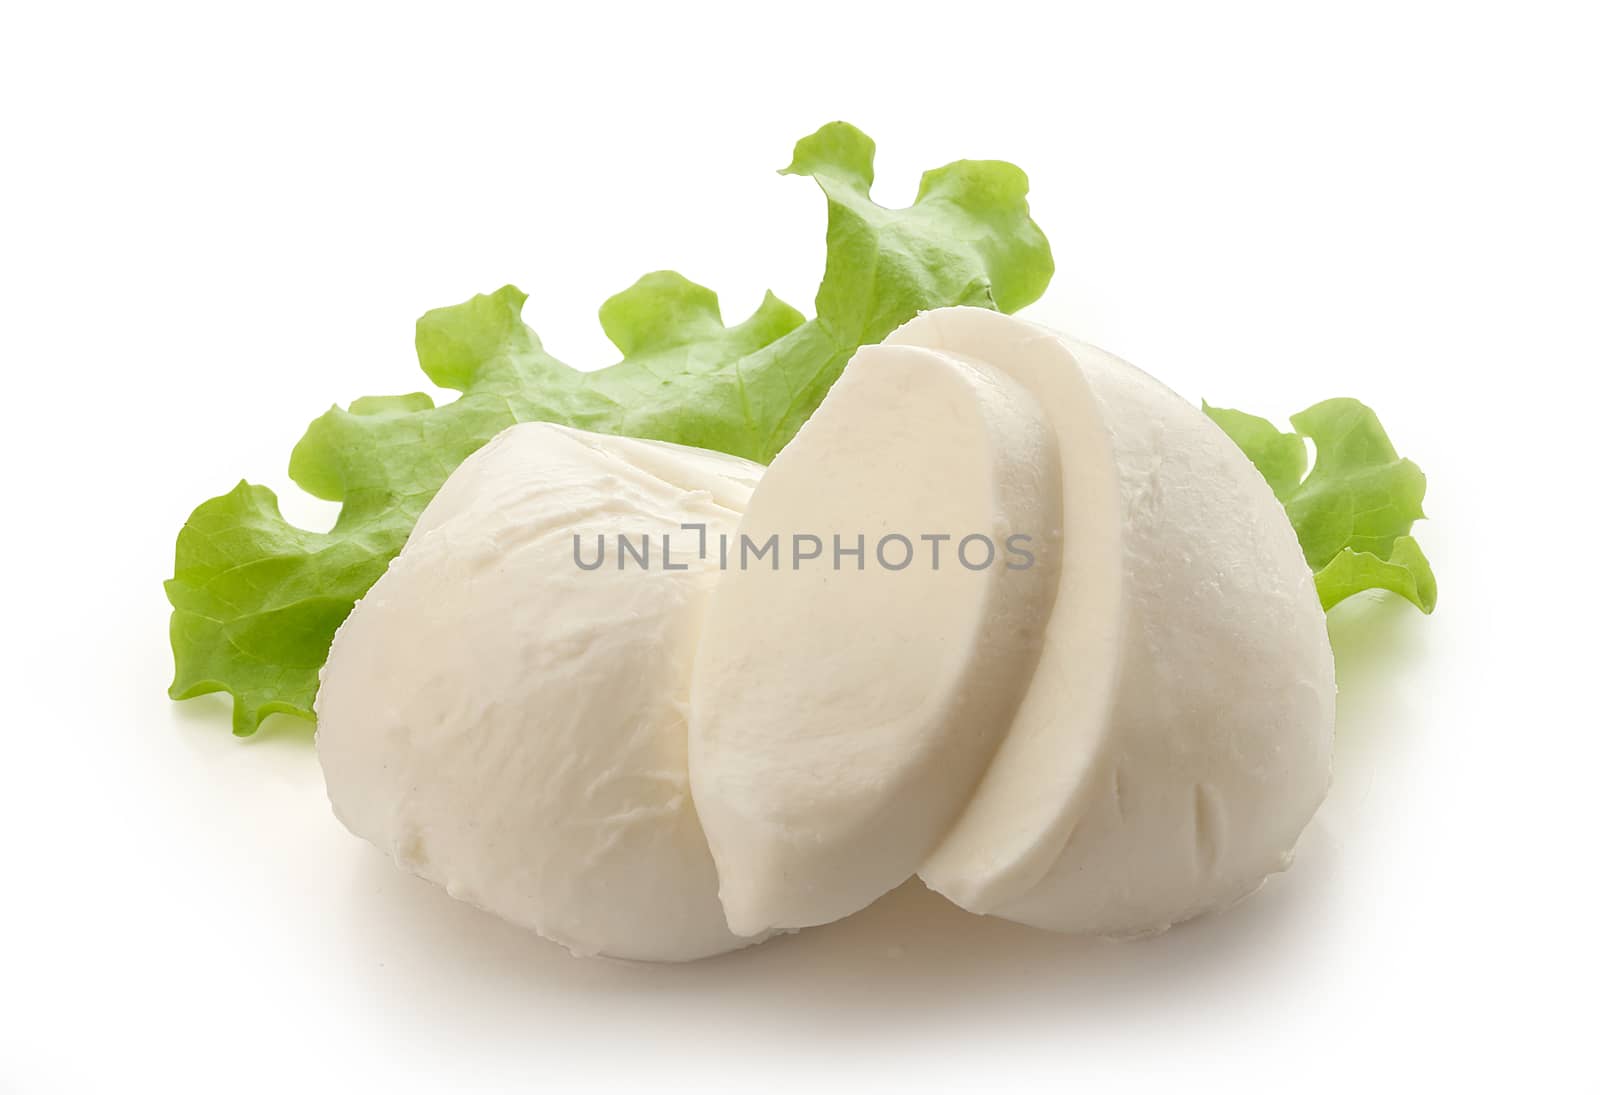 Two mozzarella balls with fresh green lettuce on the white